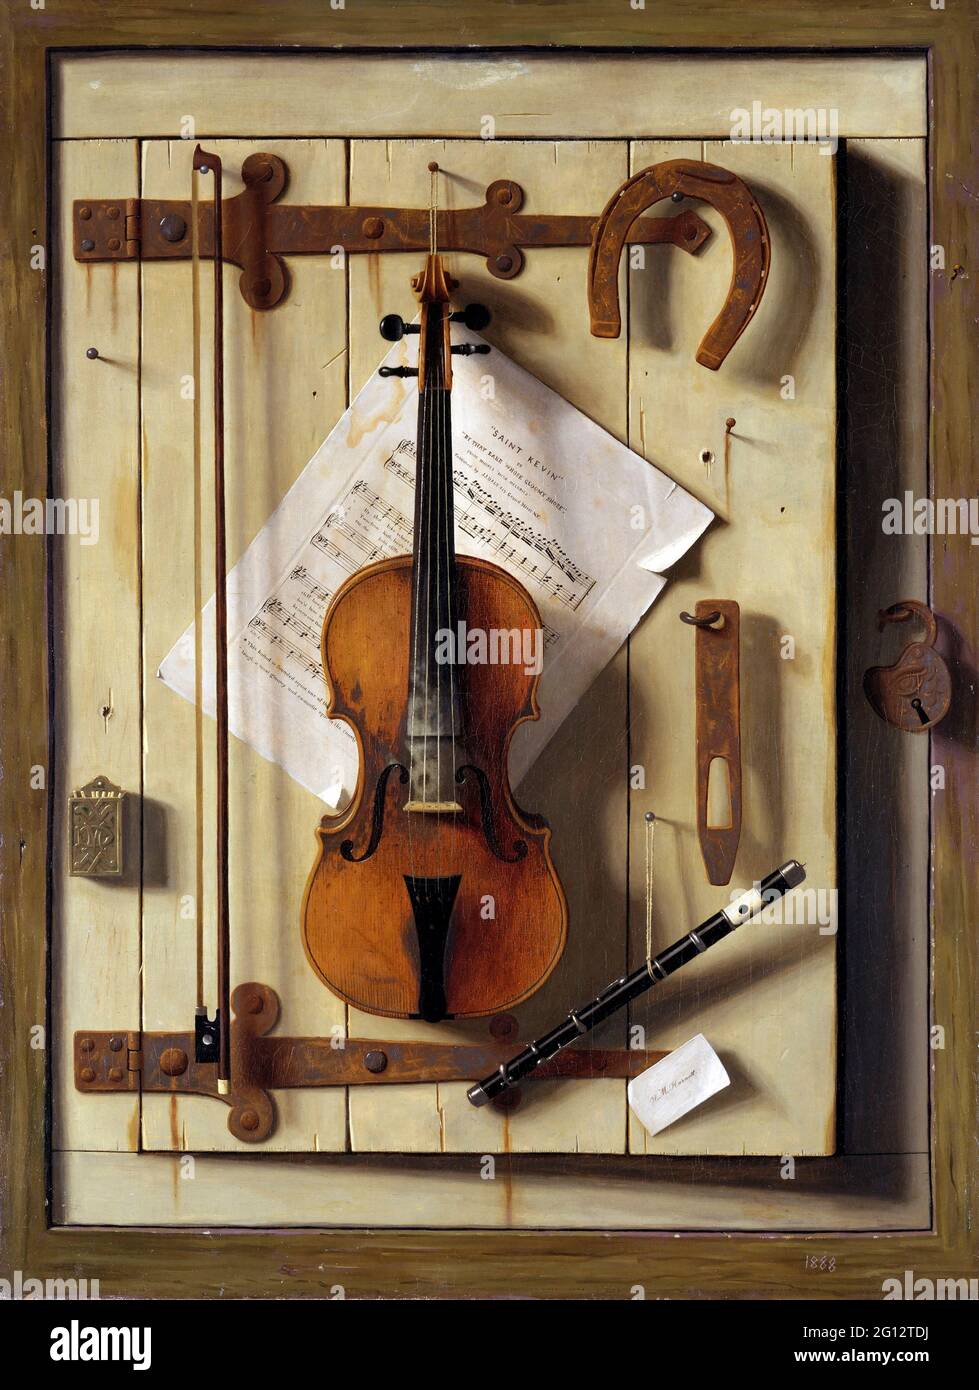 William Harnet. STILL Life—violon et musique de William Michael Harnet (1848-1892), huile sur toile, 1888 Banque D'Images